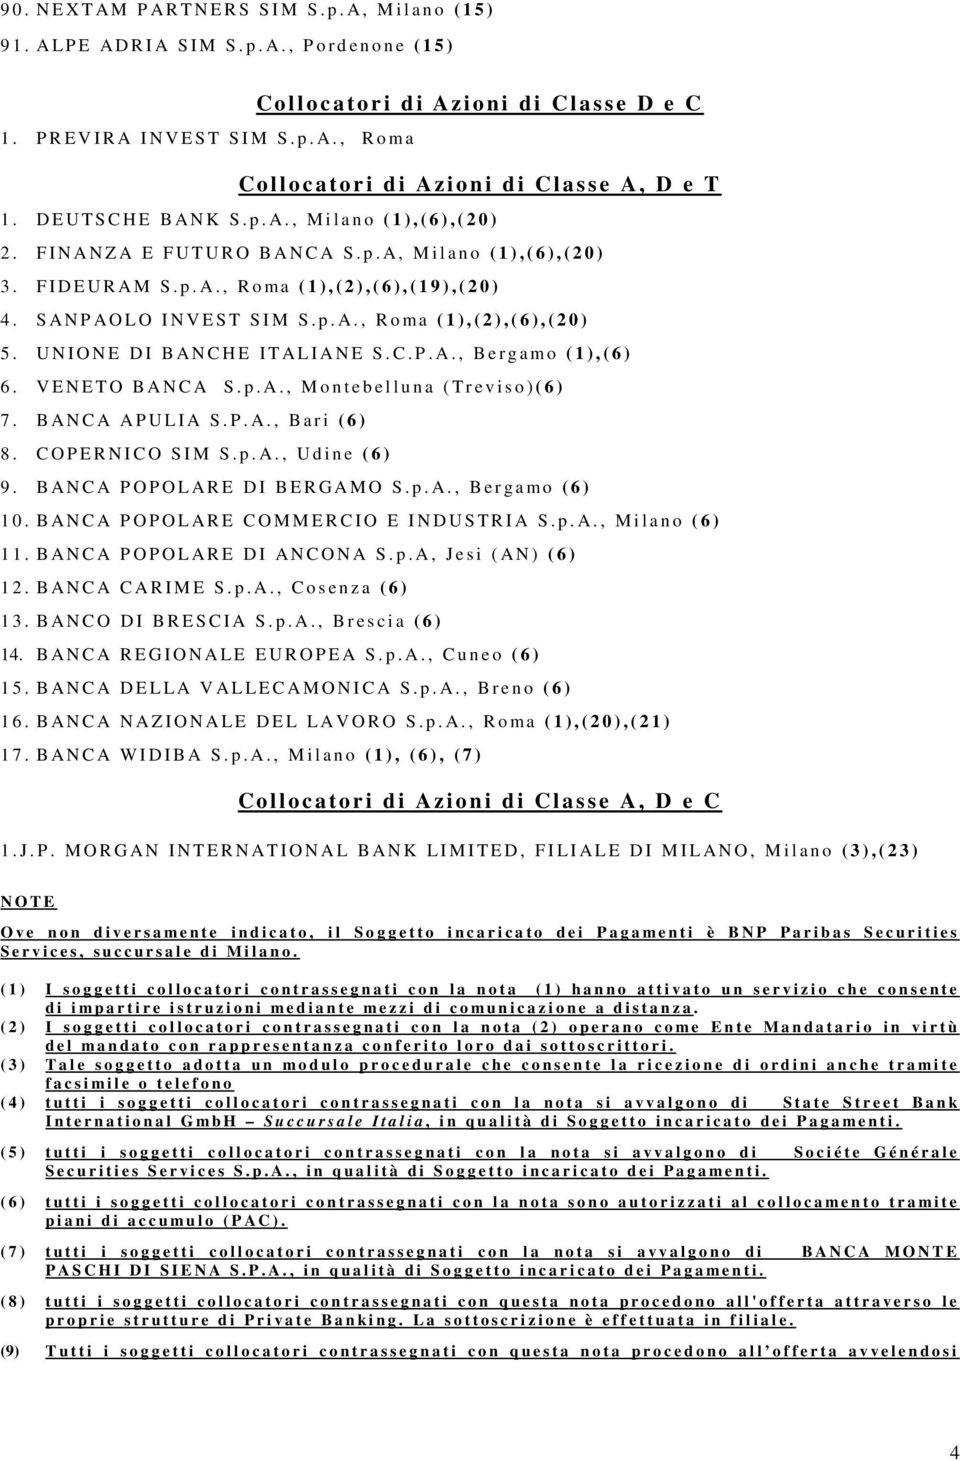 UNIONE DI BANCHE ITALIANE S.C.P.A., Bergamo (1),(6) 6. VENETO BANCA S. p.a., Montebelluna (Treviso)(6) 7. BANCA APULIA S.P.A., Bari (6) 8. COPERNICO SIM S.p.A., Udine (6) 9.